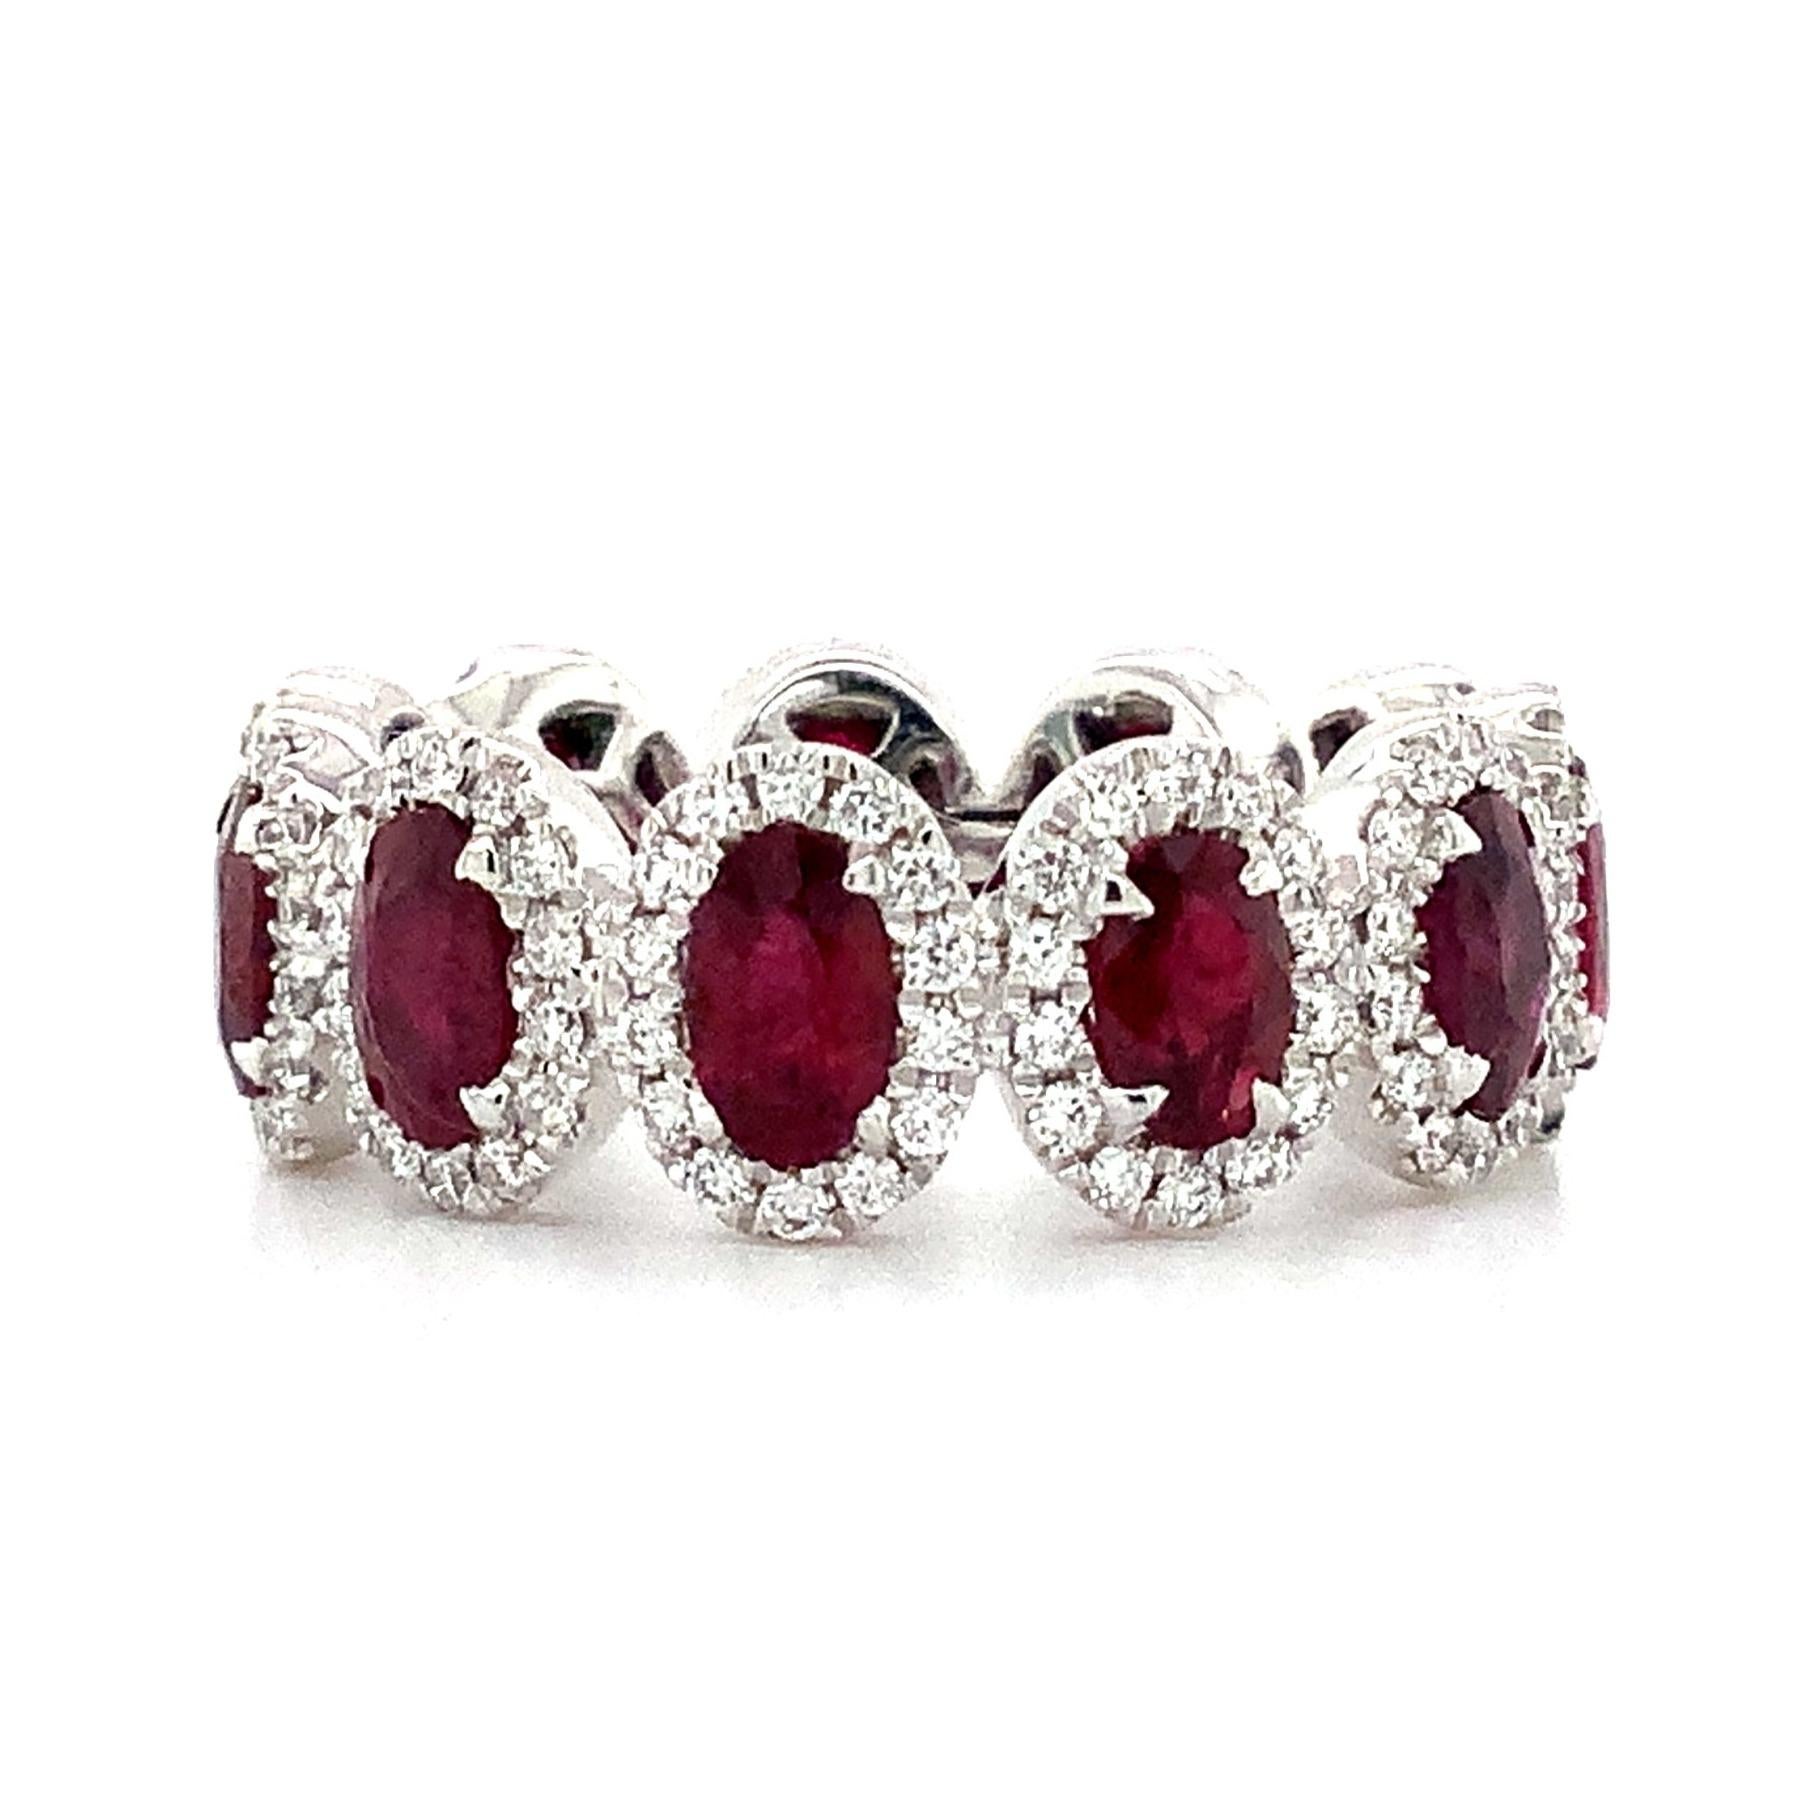 Cette magnifique bague d'éternité Roman + Jules en rubis ovale et diamant de qualité gemme est soigneusement fabriquée en platine. Ces impressionnants rubis présentent une teinte riche et profonde, encore accentuée par le halo de 4,04 ct. tw de